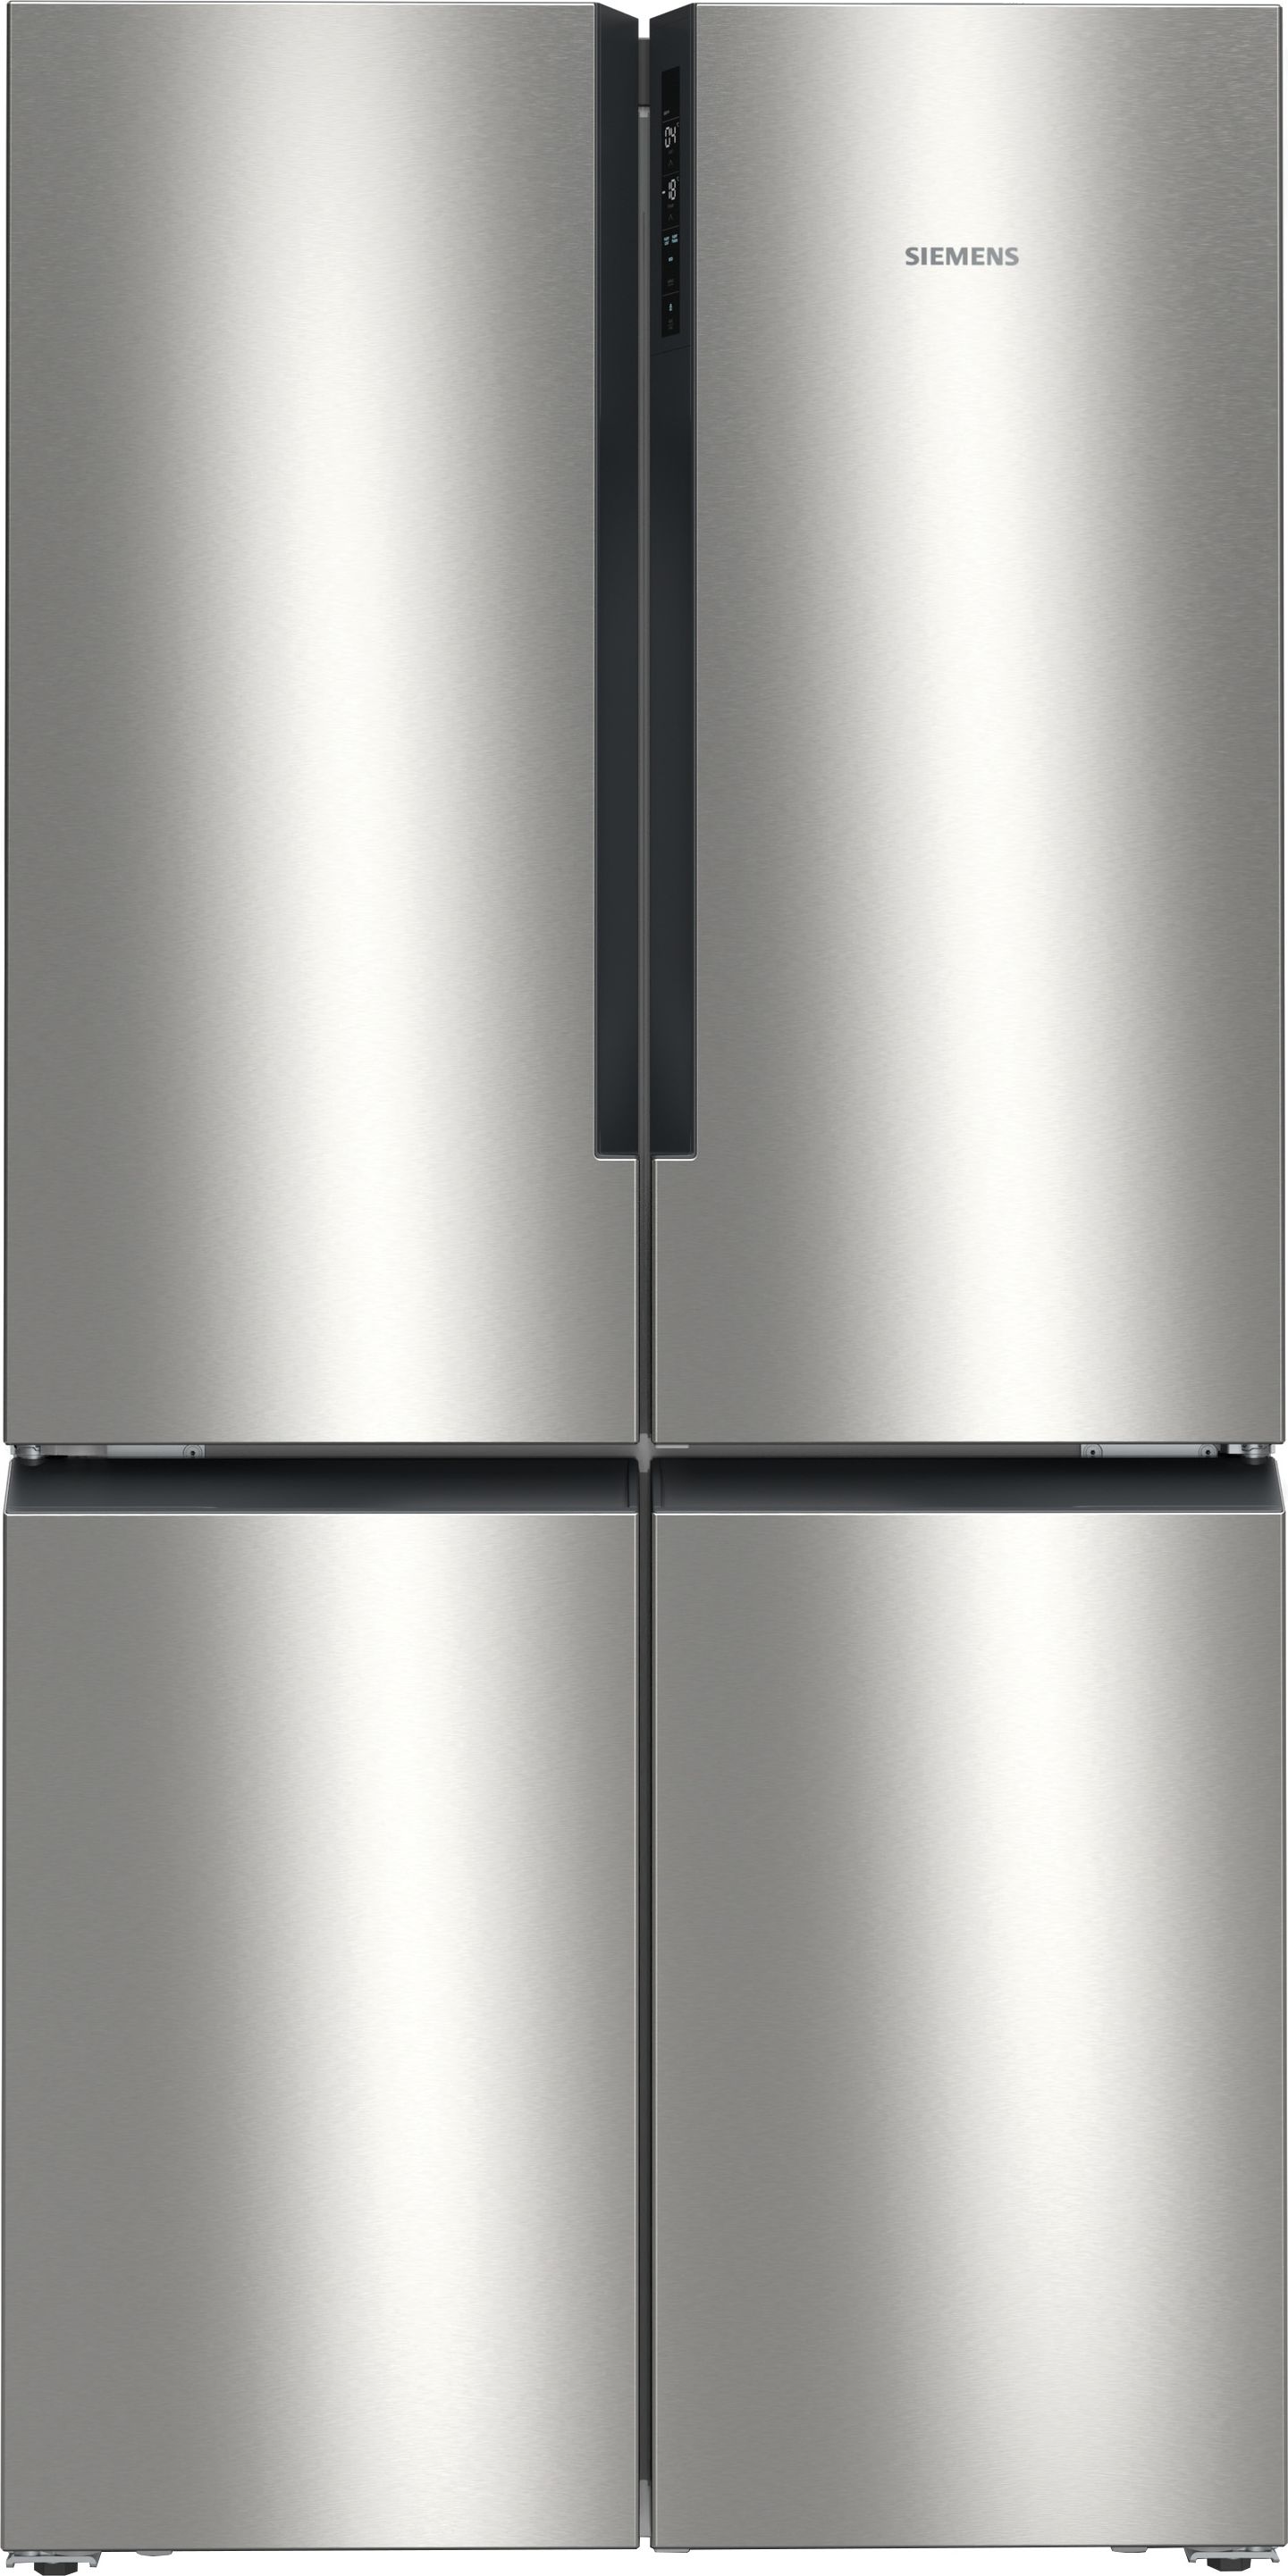 Siemens IQ-300 KF96NVPEAG American Fridge Freezer - Inox - E Rated, Stainless Steel